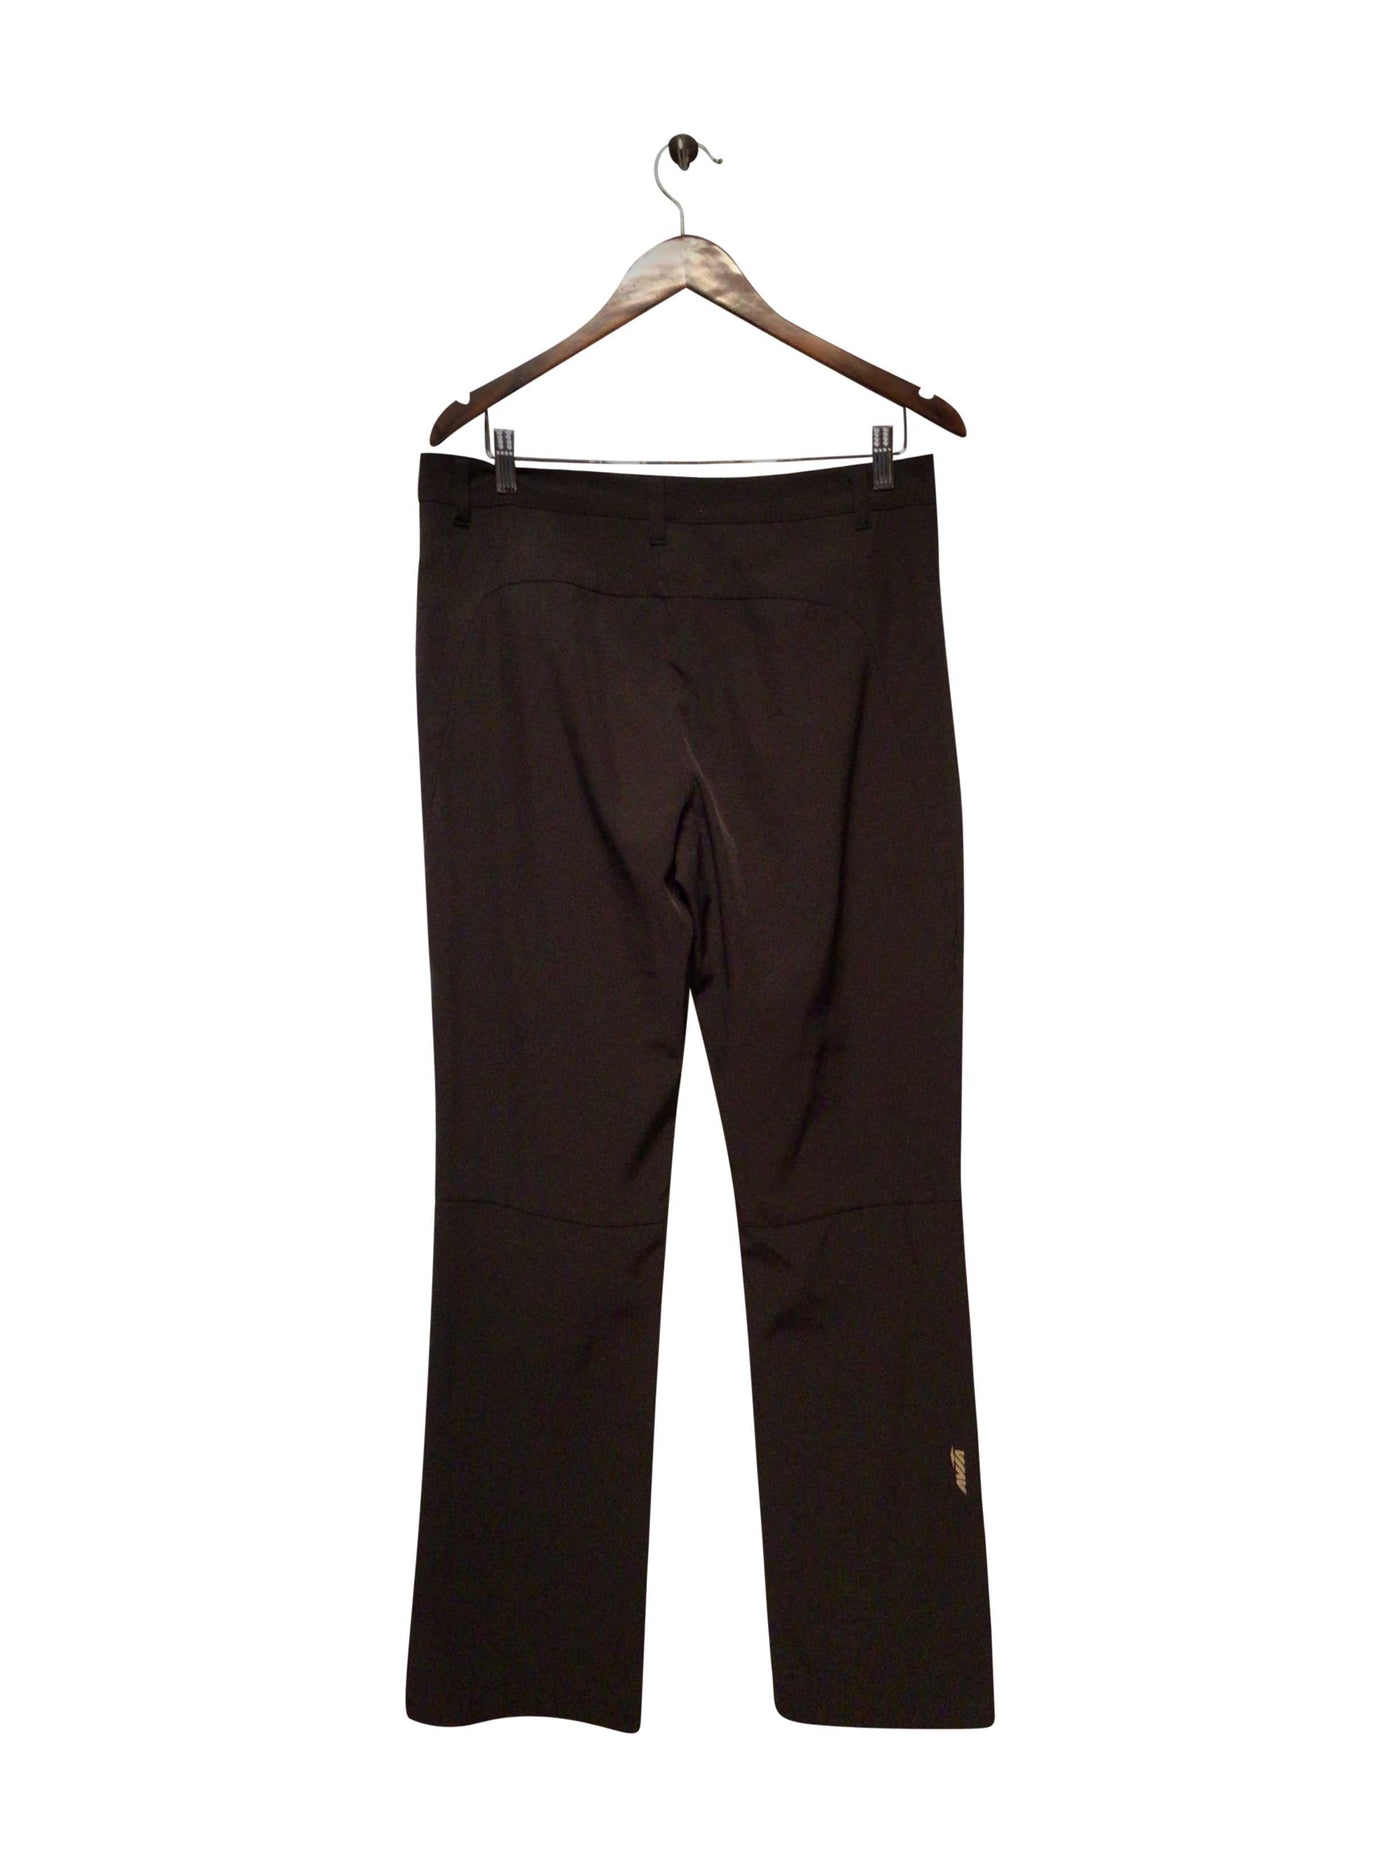 AVIA Regular fit Pant in Black  -  M  7.99 Koop